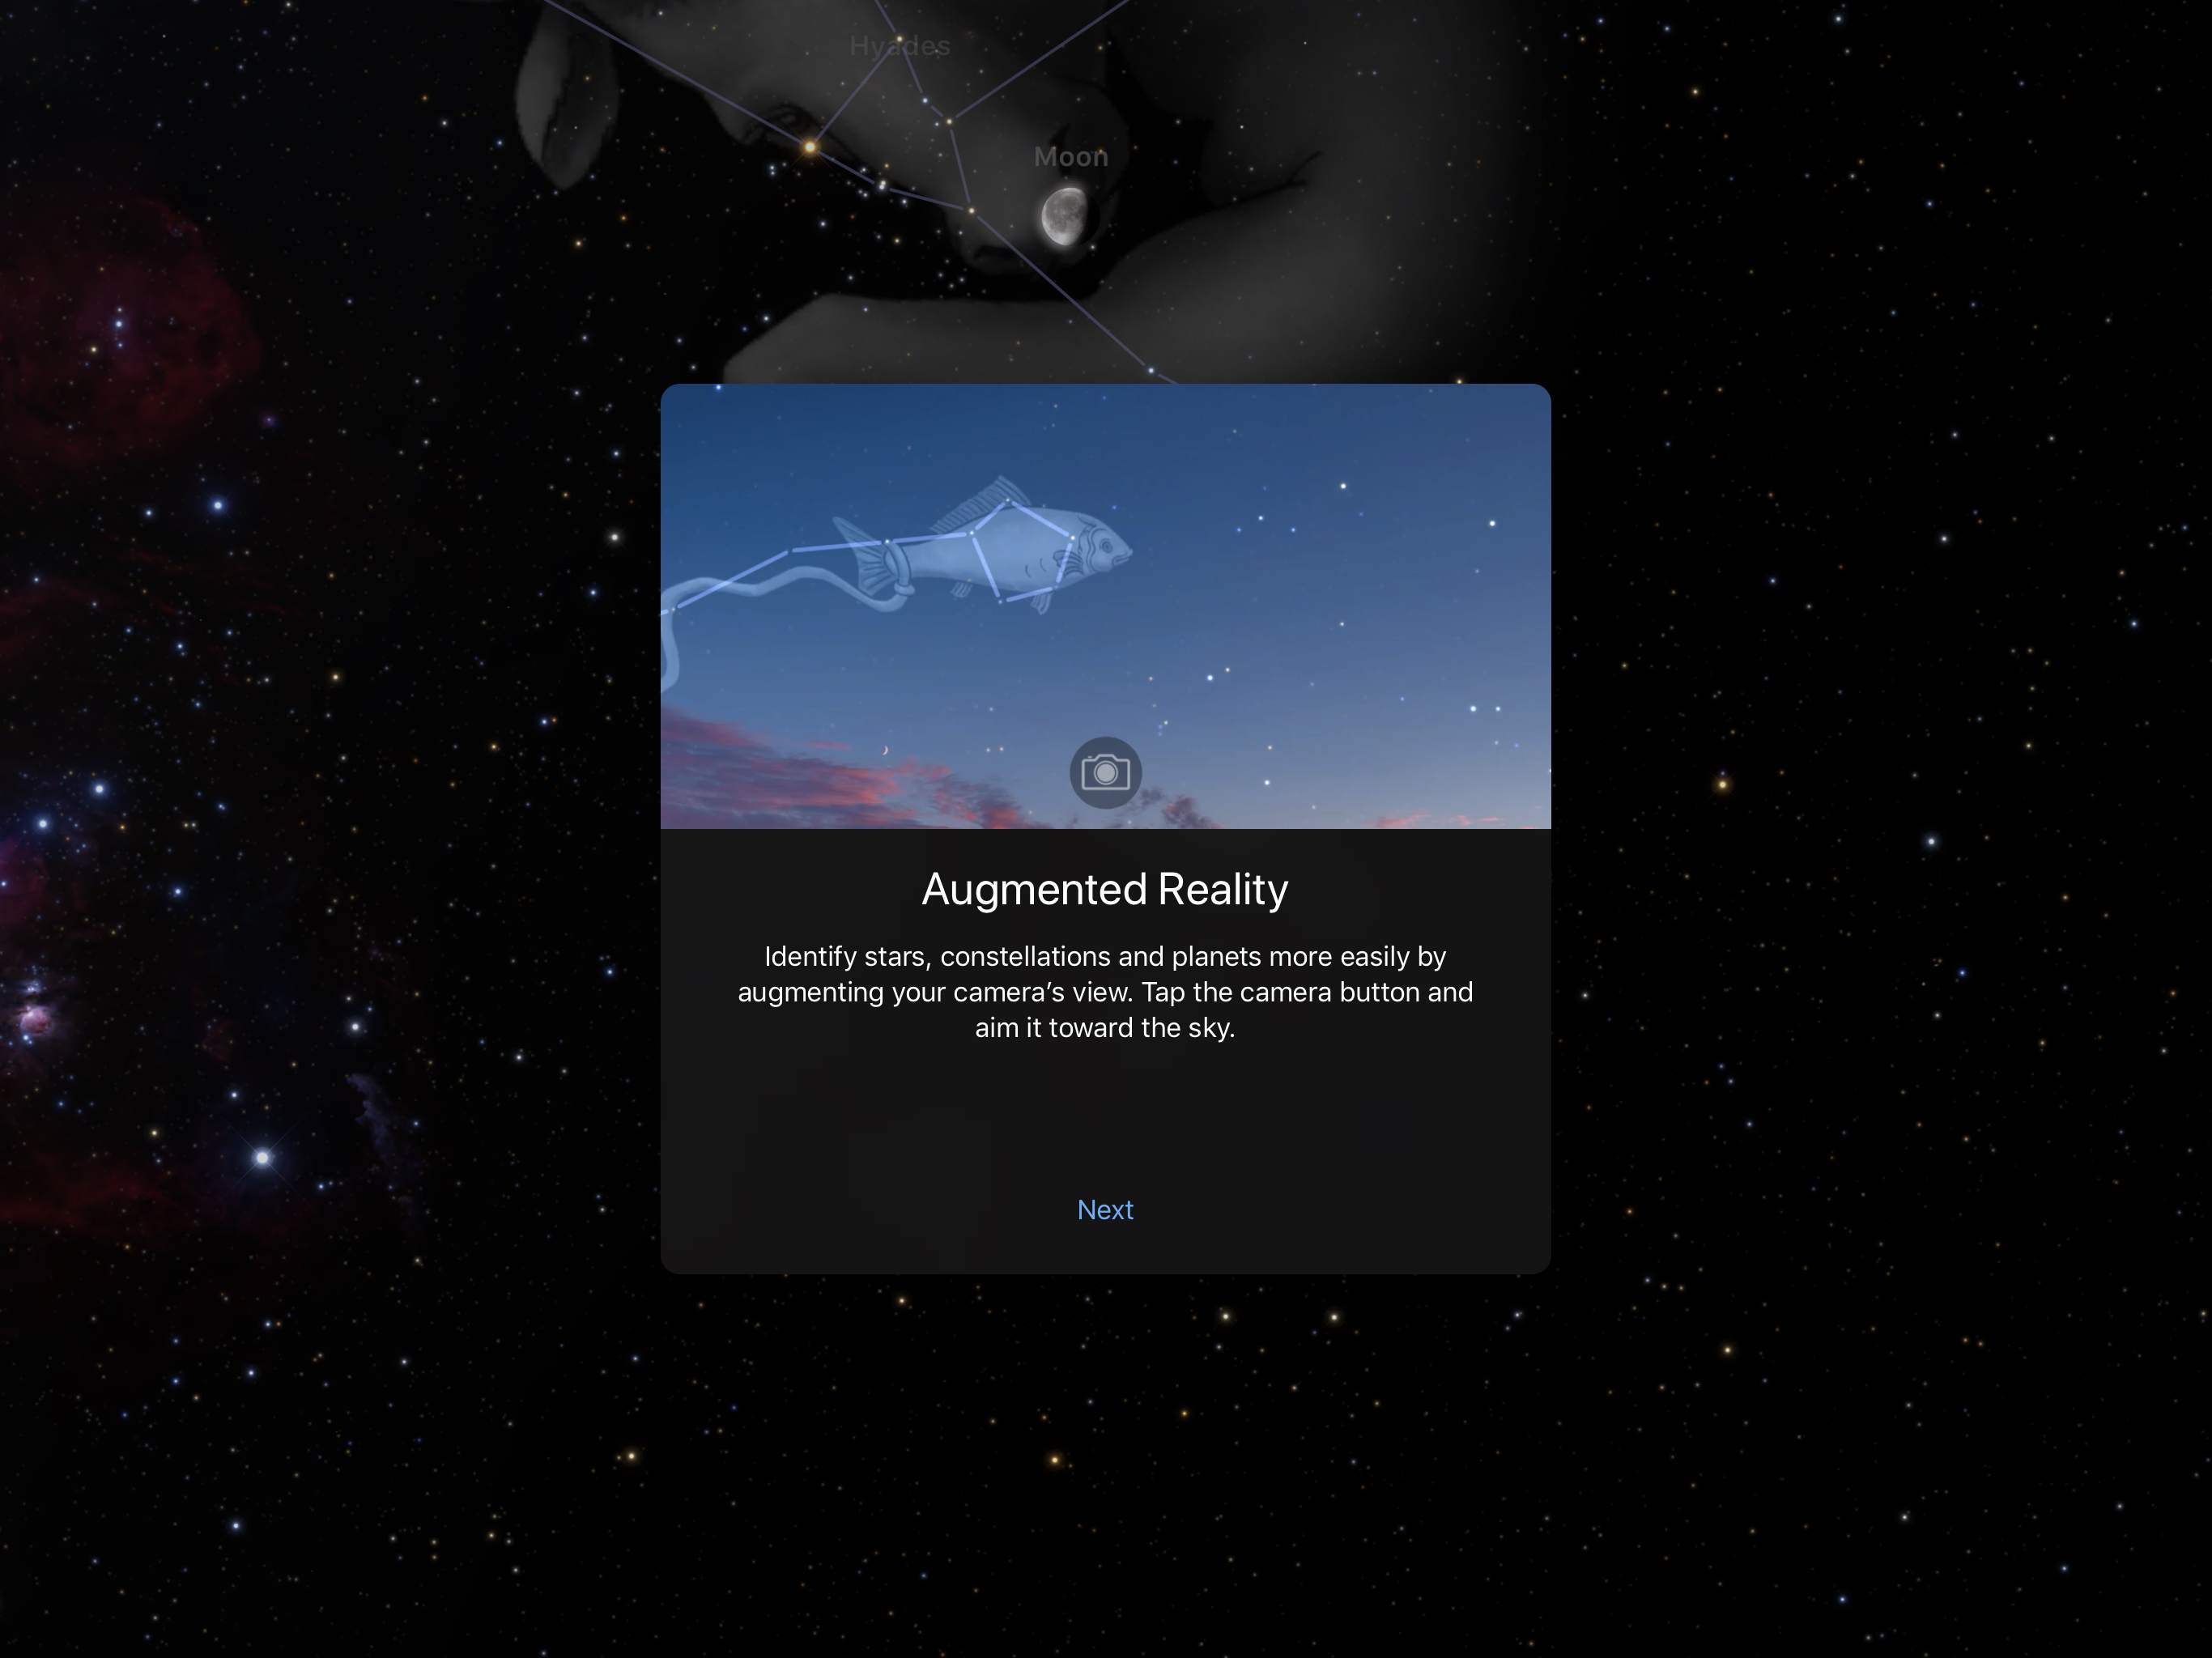 Captura de tela do Sky Guide, mostrando o modo de realidade aumentada que se sobrepõe a um mapa estelar com a imagem da câmera